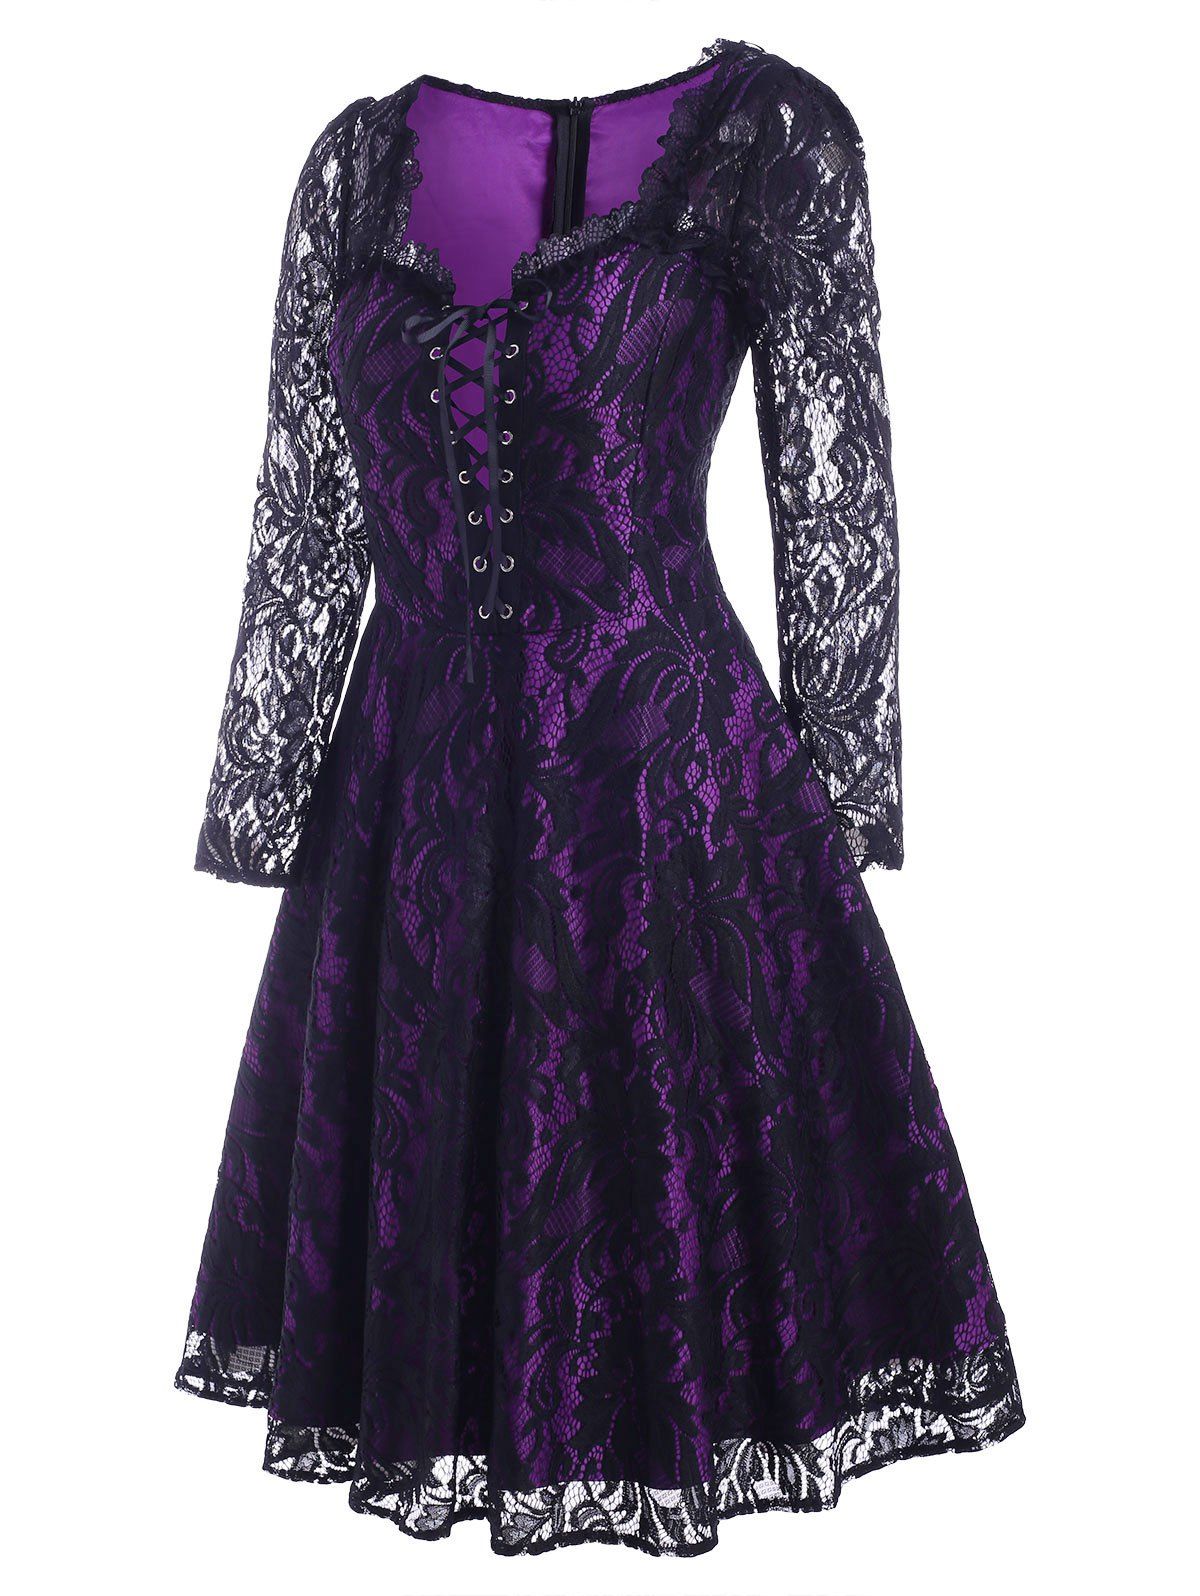 Vintage Gothic Lace Sheer Lace Up A Line Dress - PURPLE 2XL